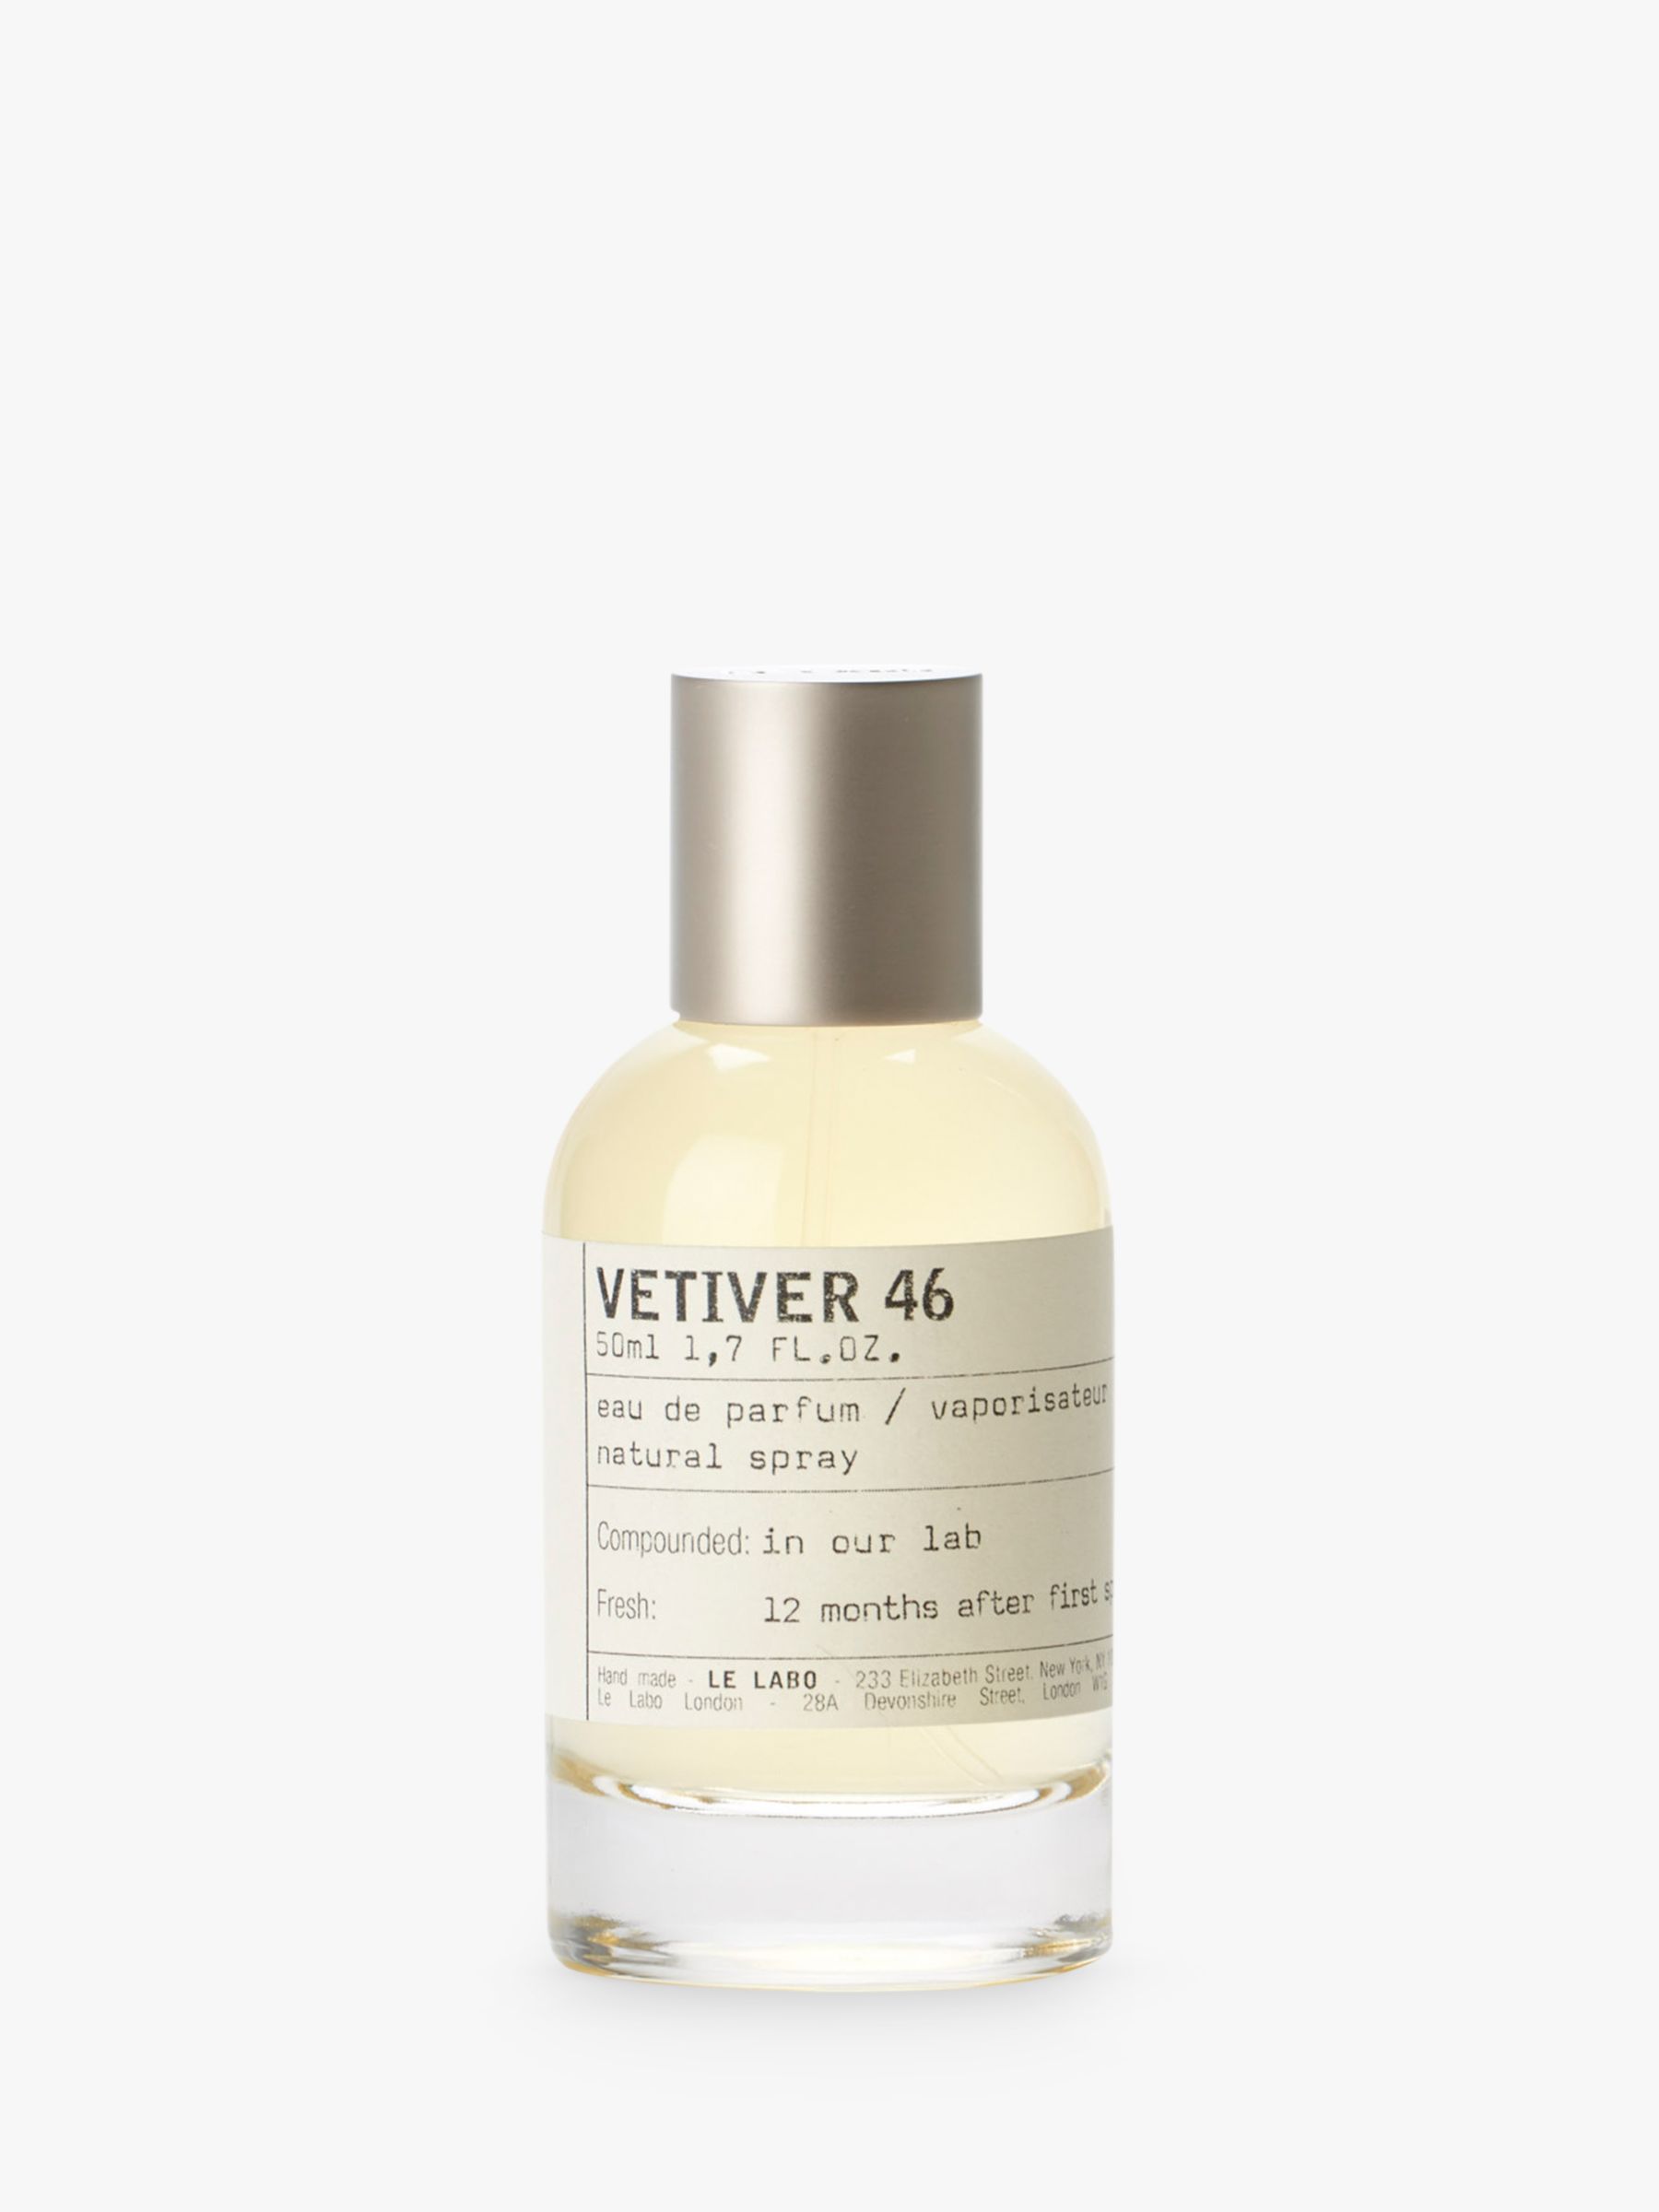 Le Labo Vetiver 46 Eau de Parfum, 50ml at John Lewis & Partners